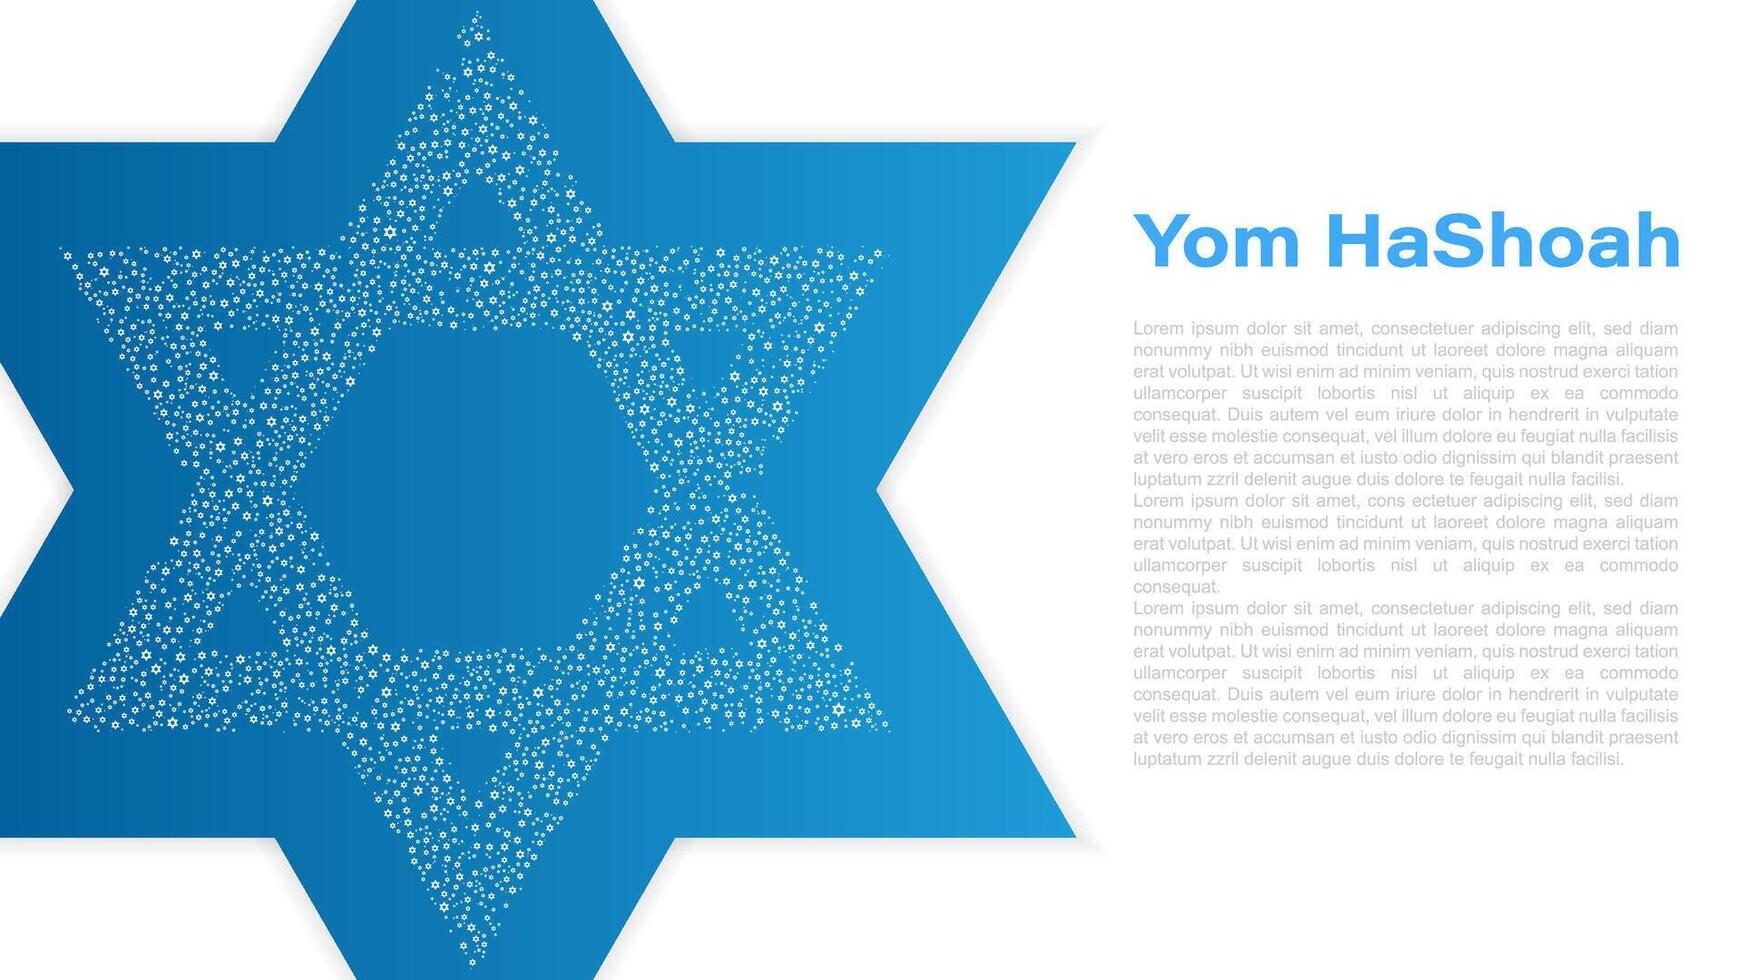 yom hashoah, holocauste souvenir jour, illustration vecteur